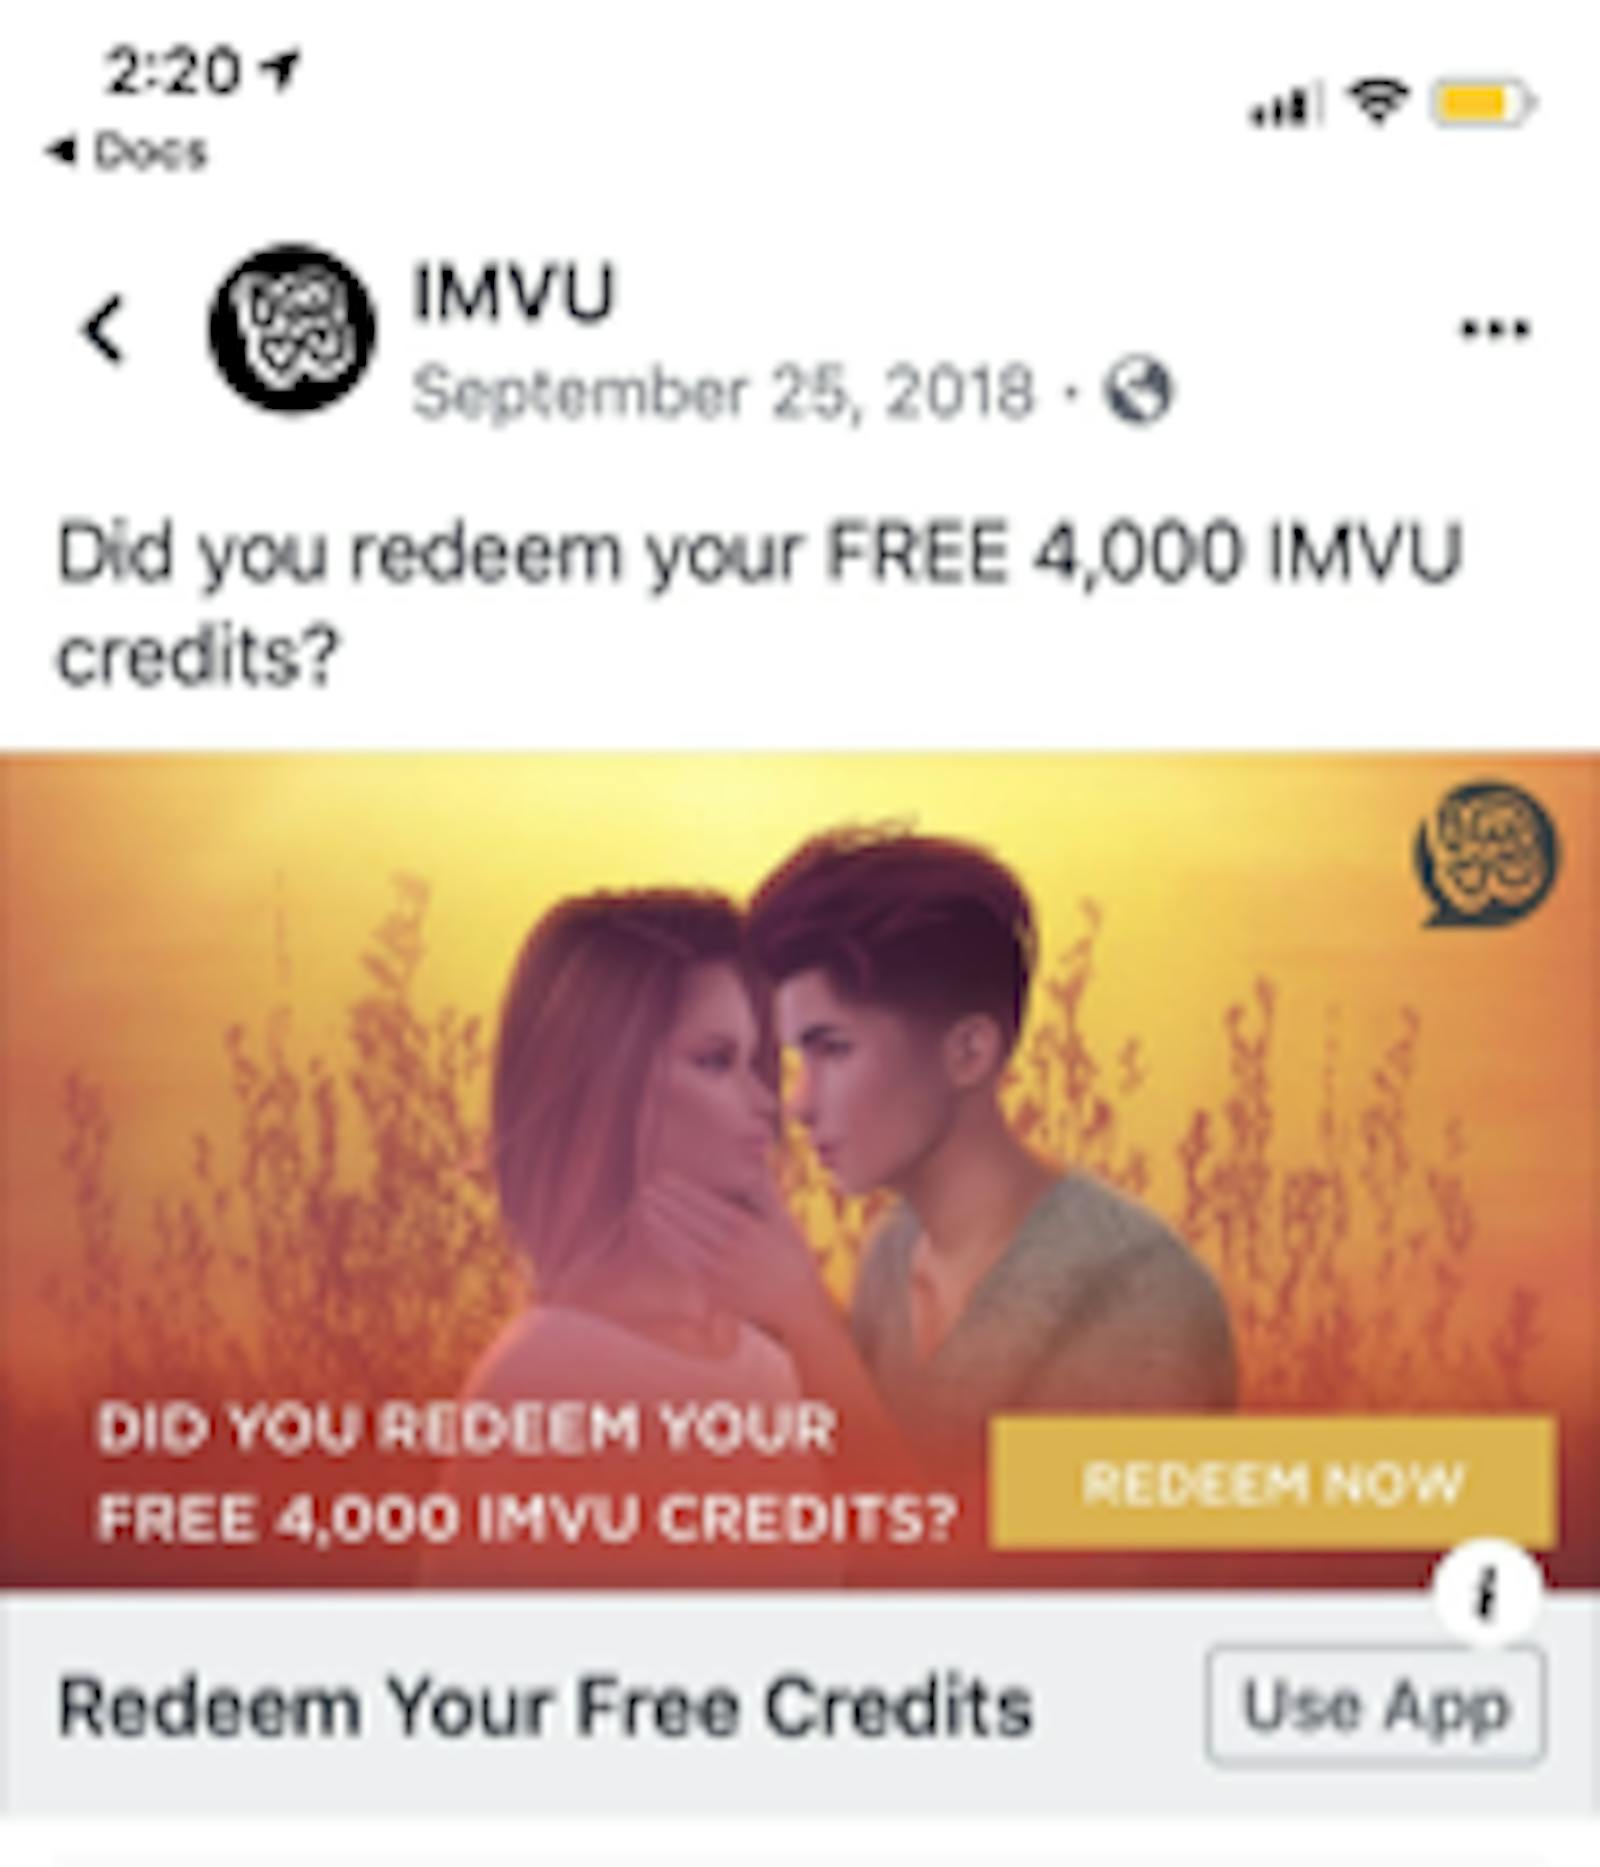 IMVU Facebook ad campaign 2